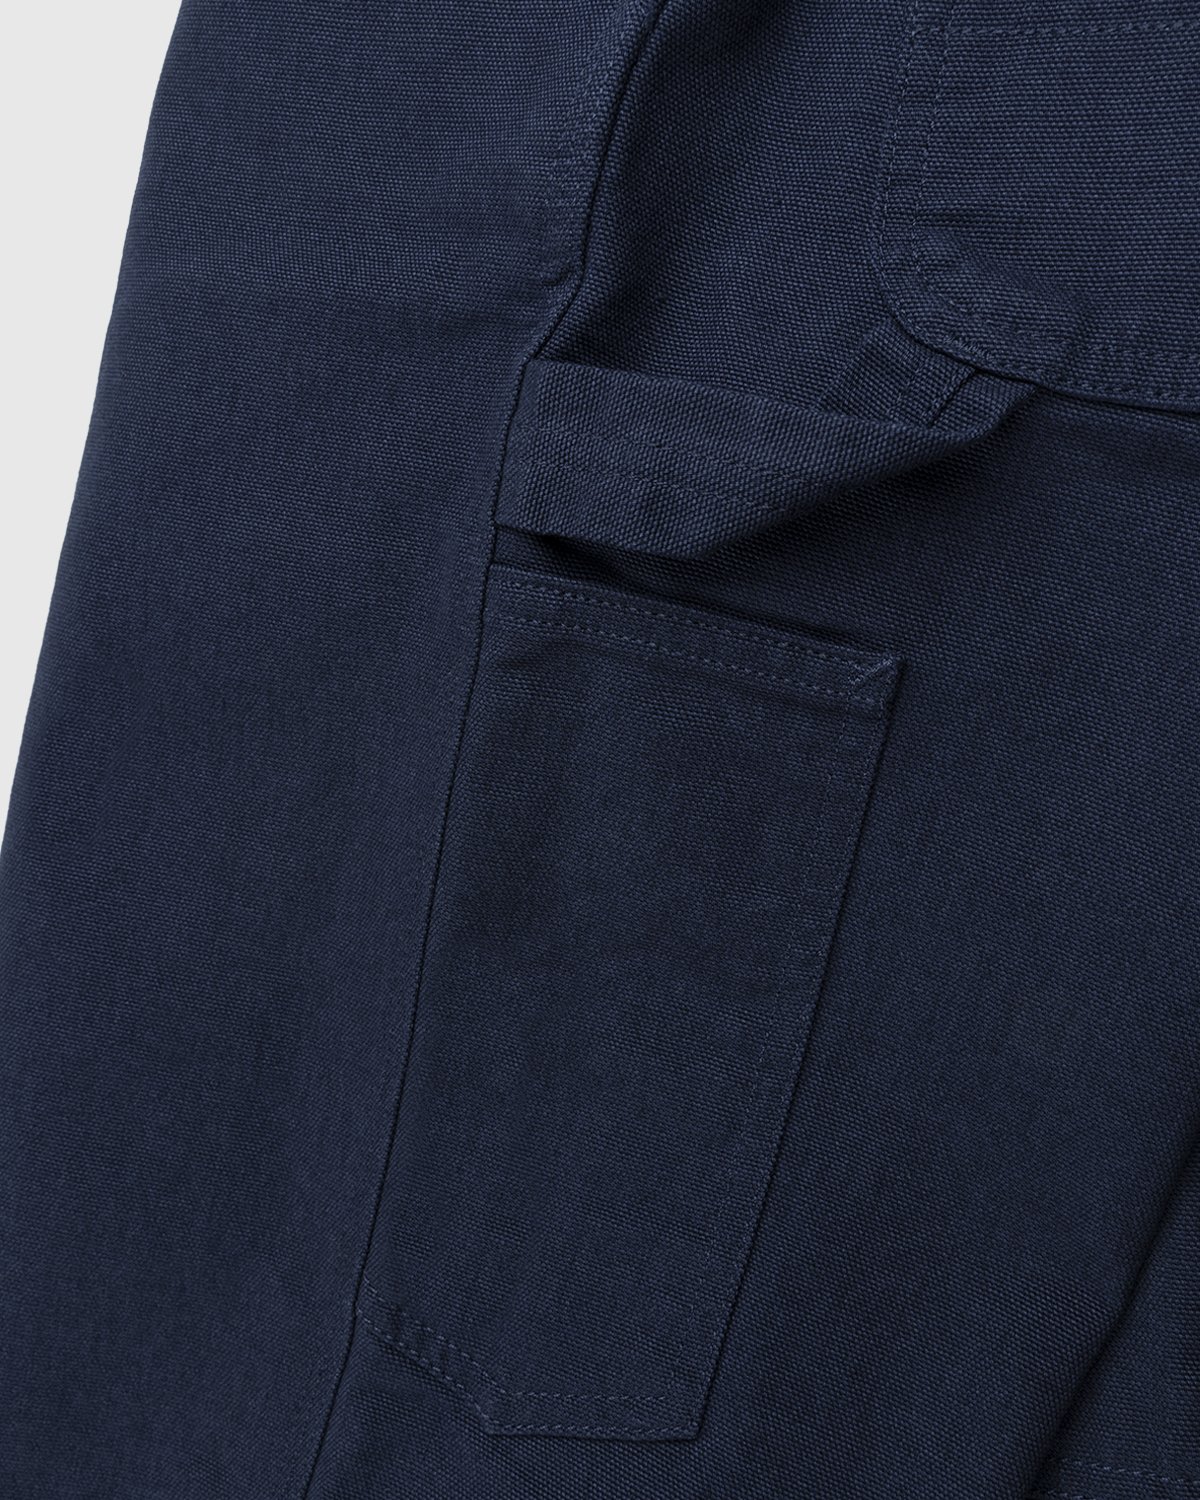 Carhartt WIP - Ruck Single Knee Pant Dark Navy - Clothing - Blue - Image 7